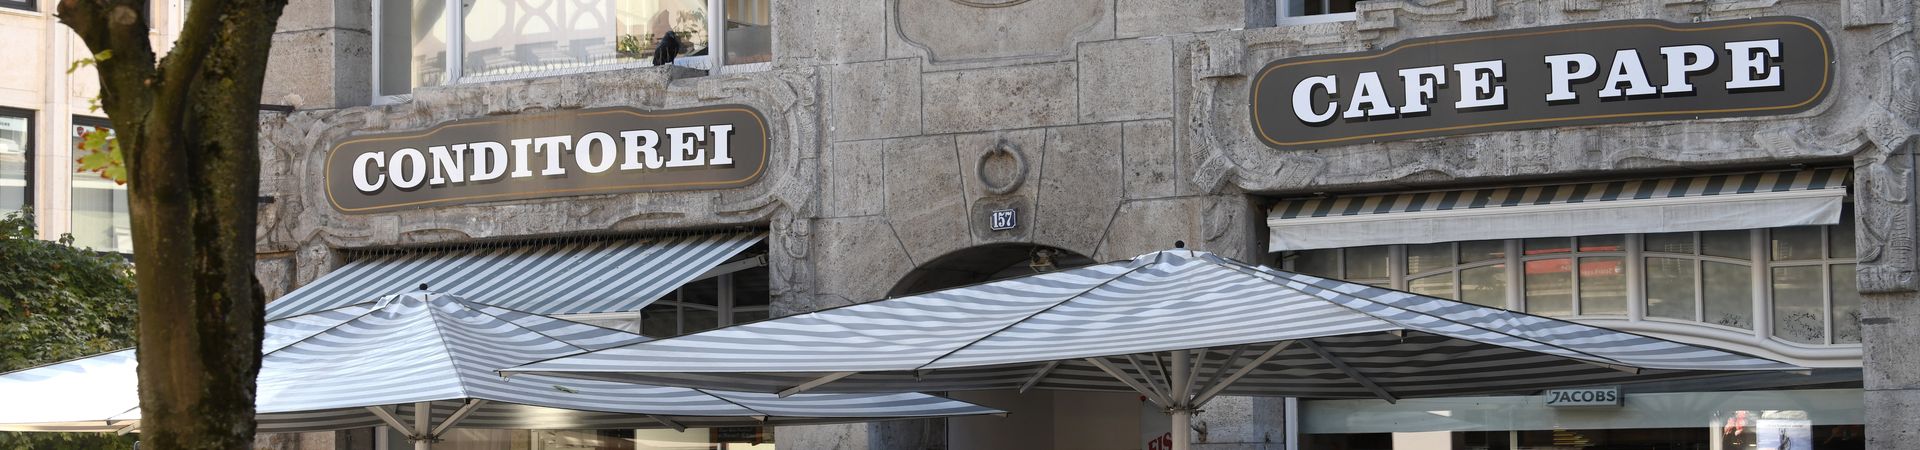 Blick auf blau-weiße Schirme und Inschrift Conditorei Café Pape